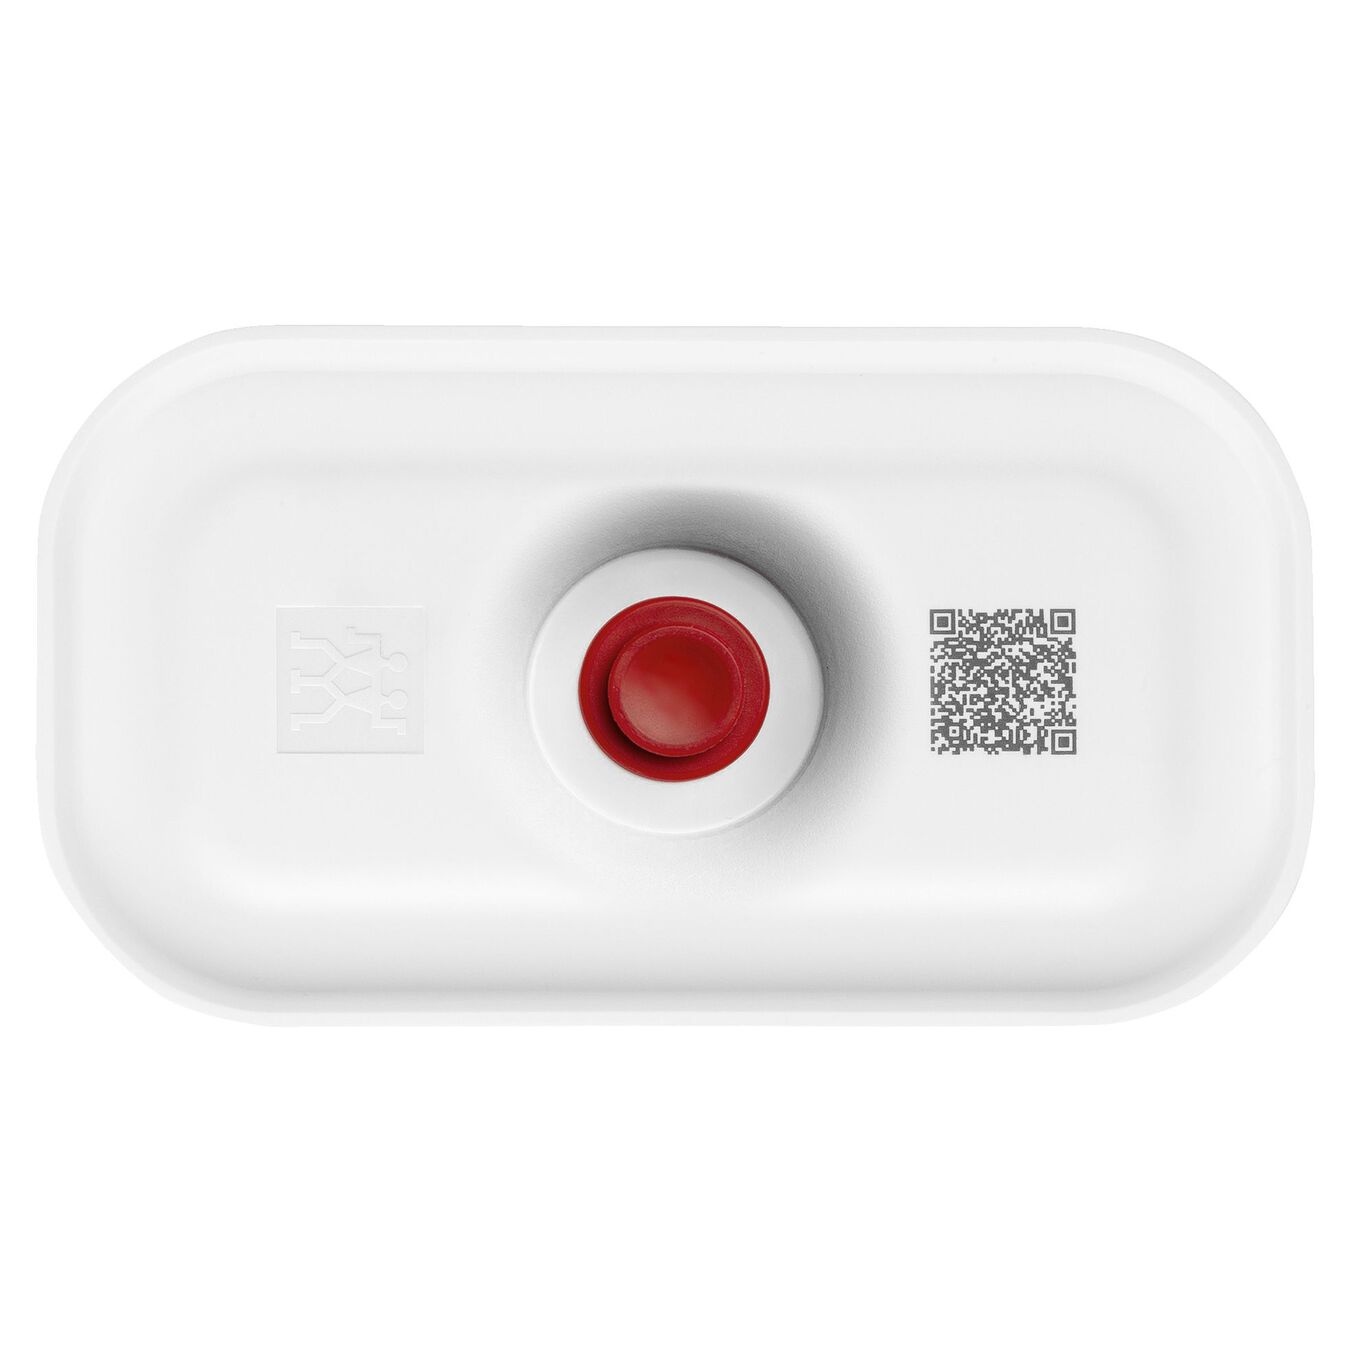 Lunch box sottovuoto S, plastica, bianco-rosso,,large 2